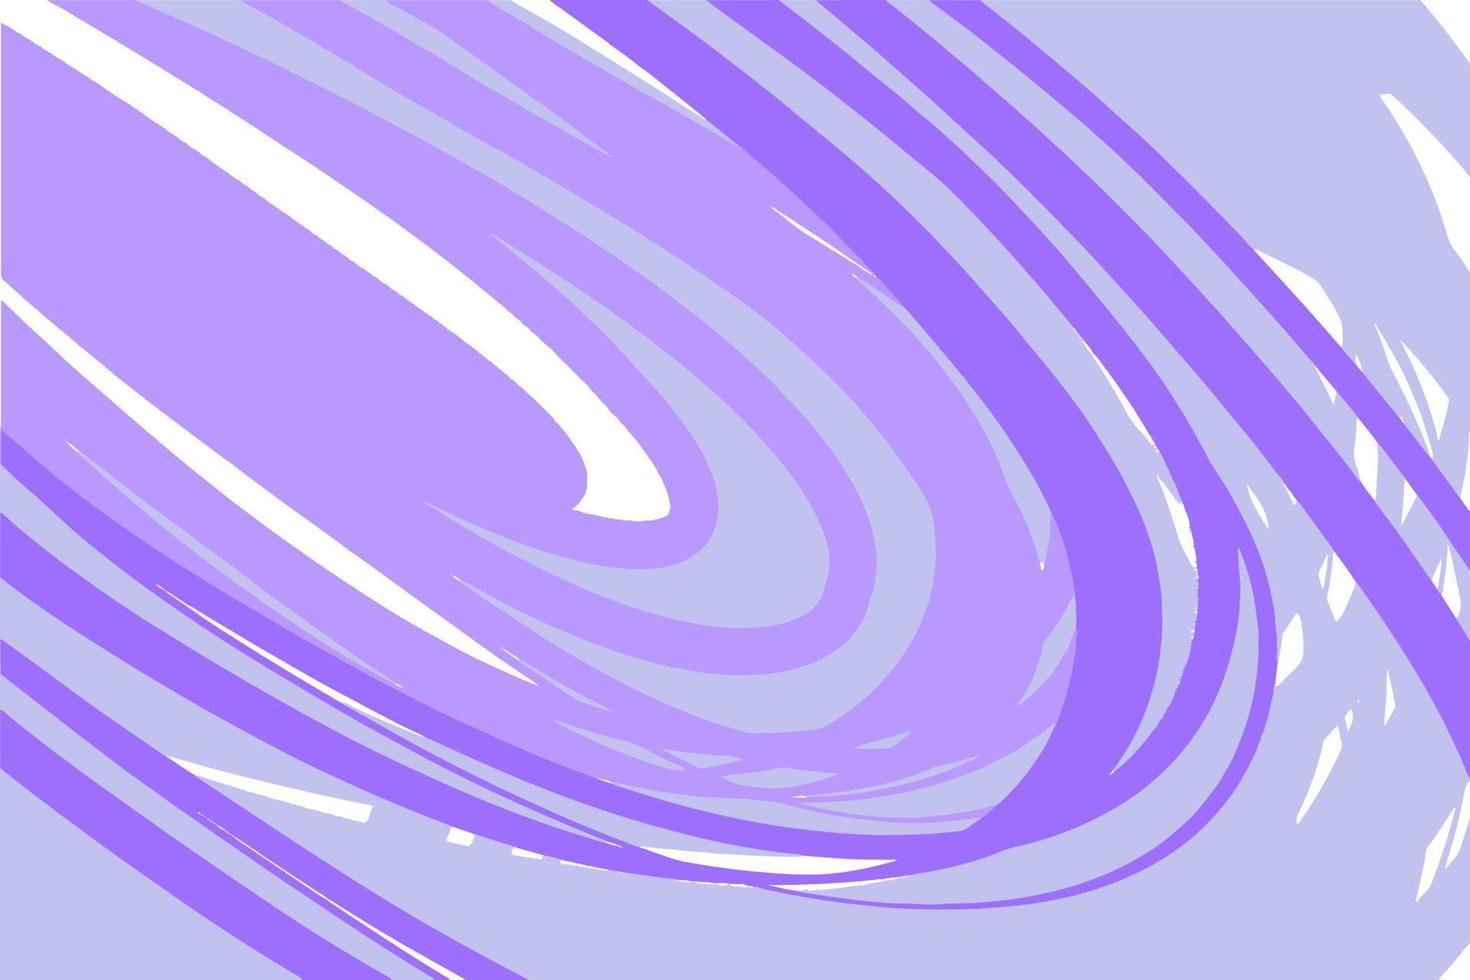 geometrischer acrylhintergrund auf weißer leinwand, in lila- und lilatönen, minimalistische grafische linie vektor